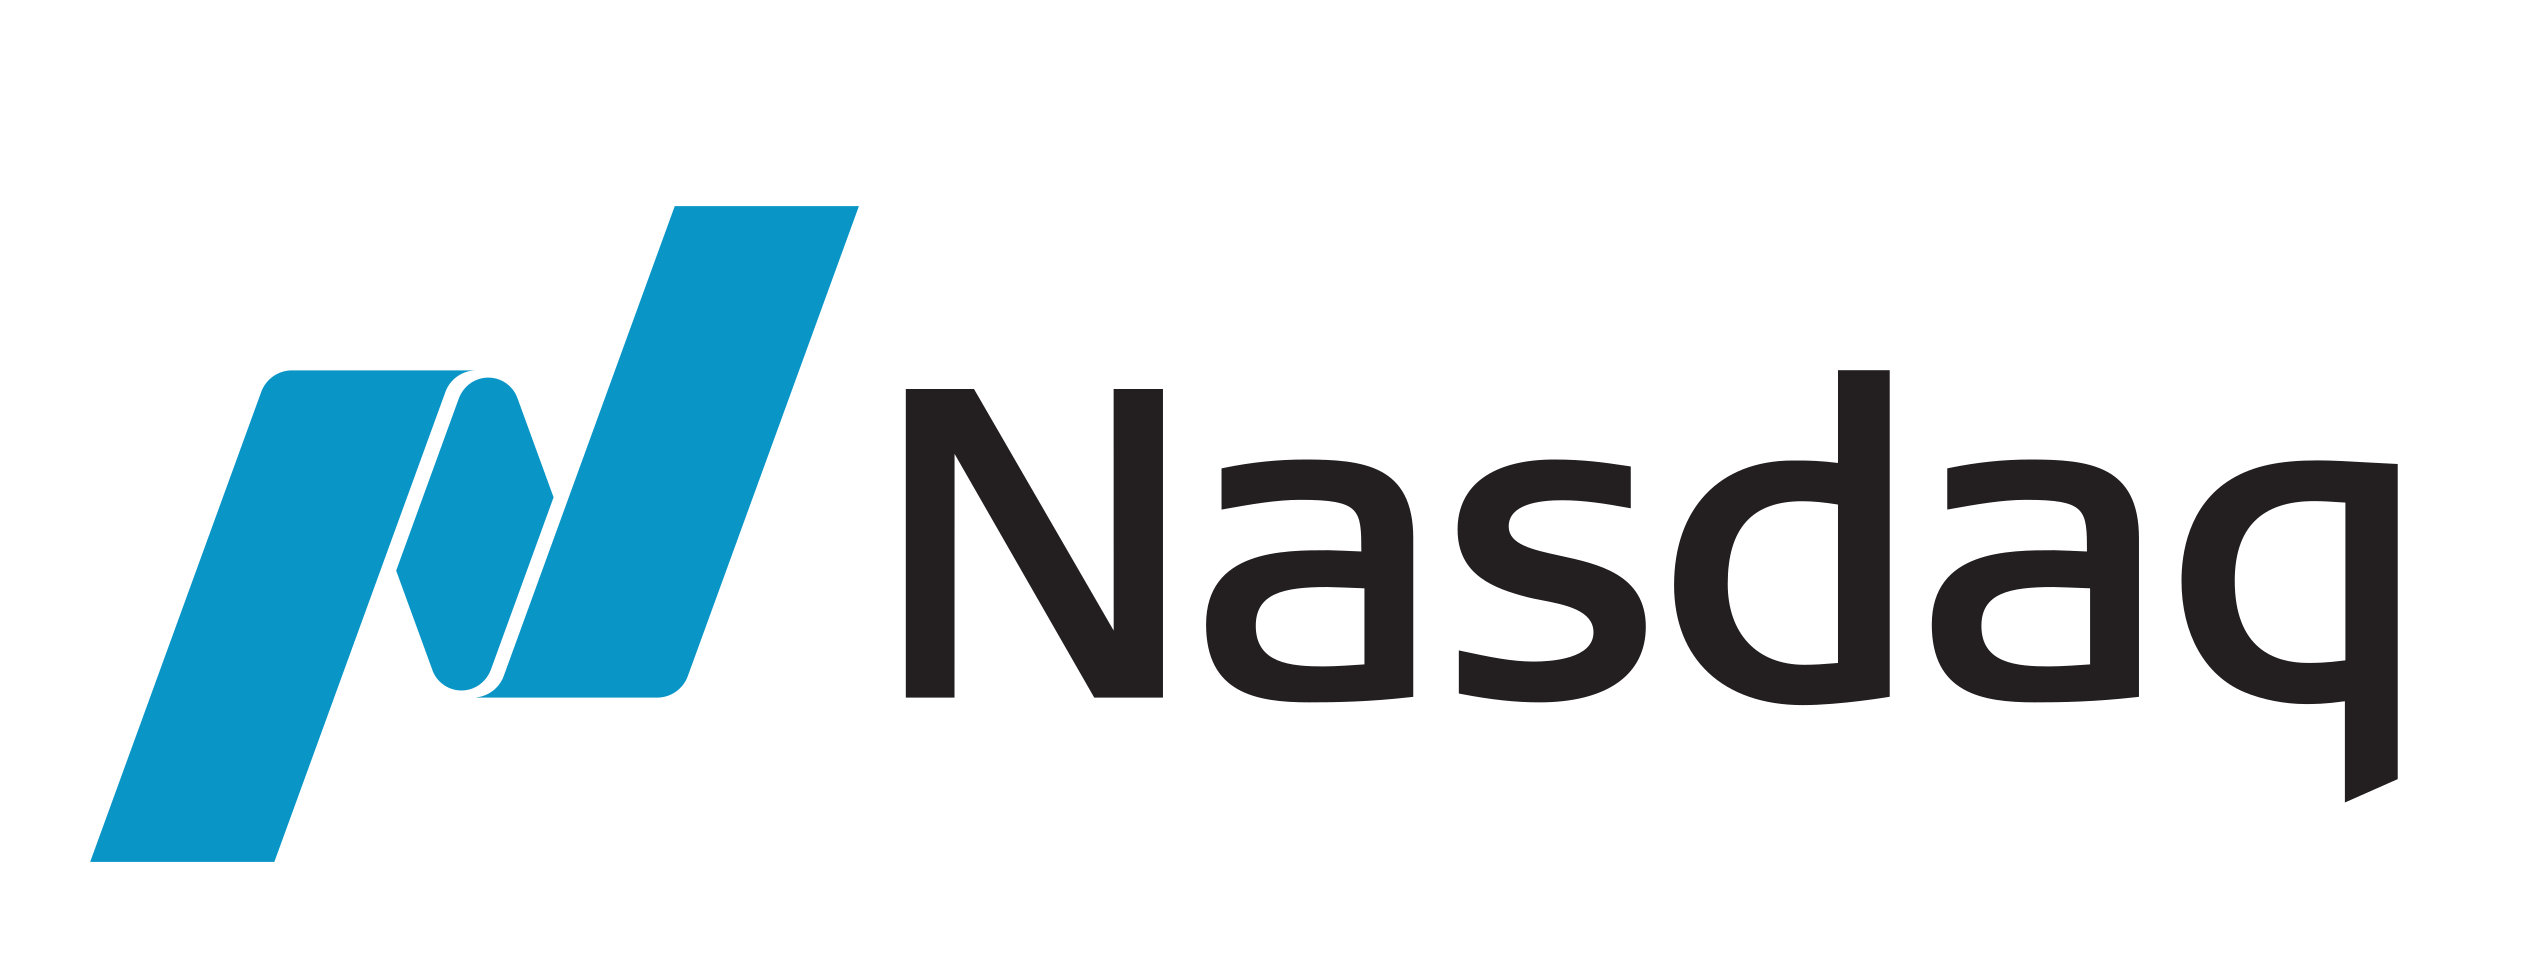 Nasdaq-Transparent